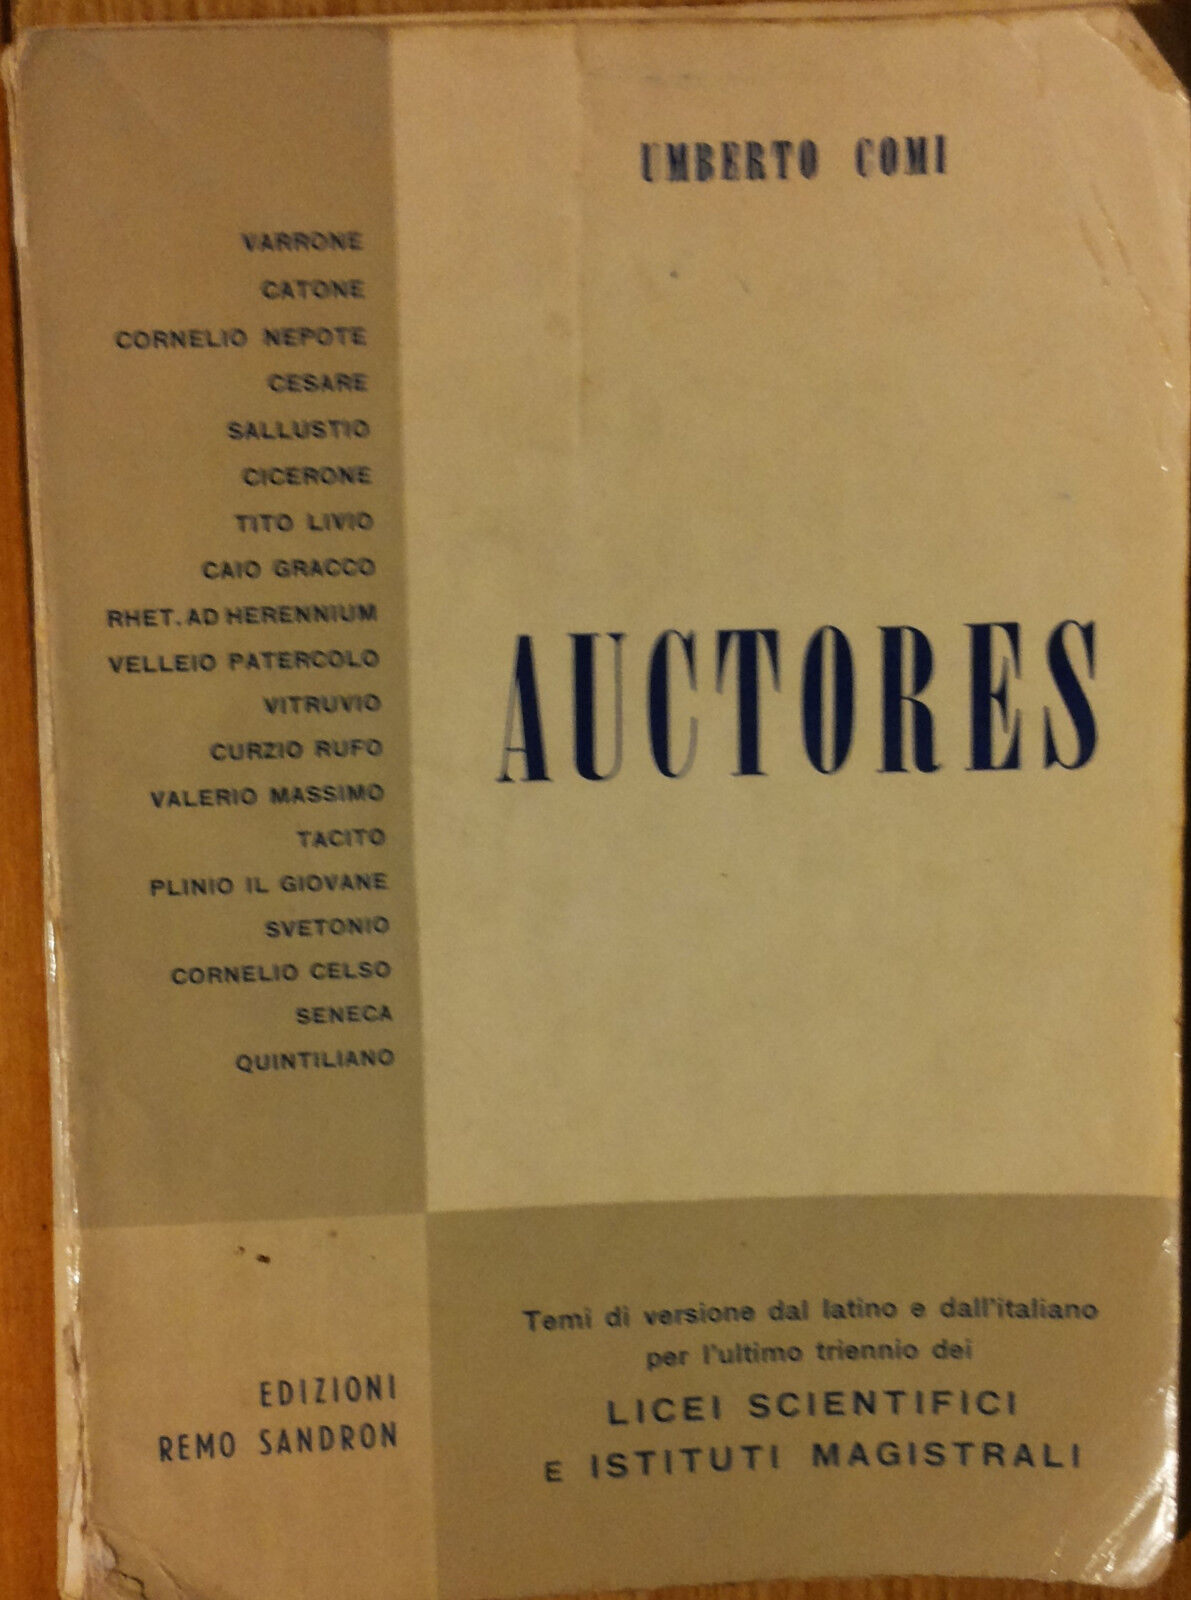 Auctores - Comi - Edizioni Remo Sandron,1960 - R